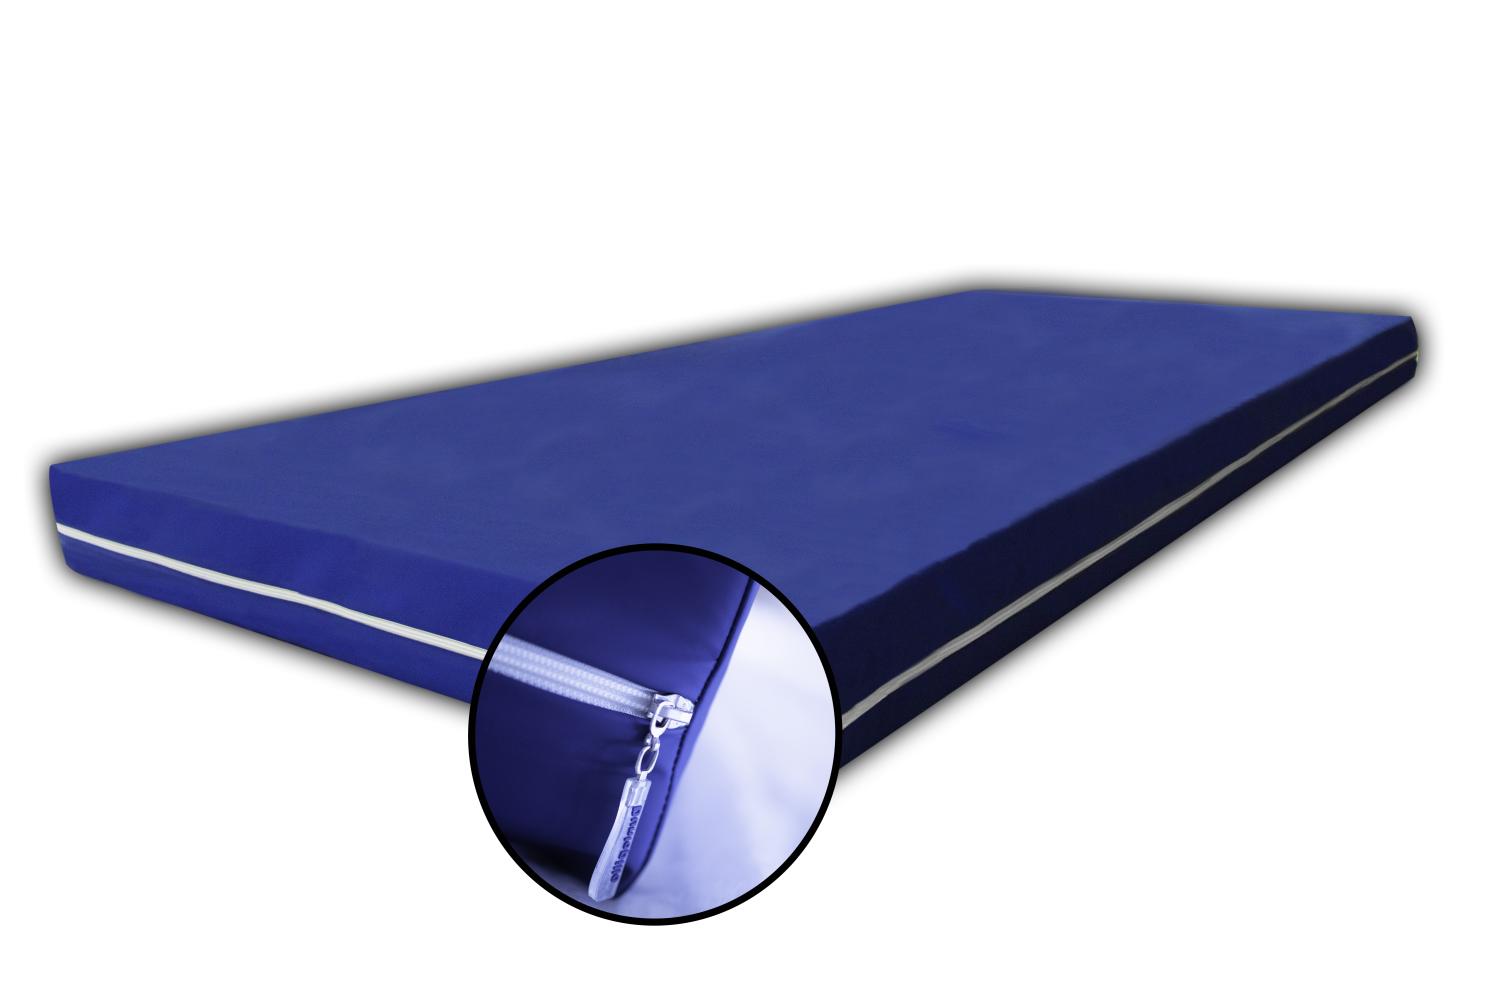 Rollmatratze, blau, RG30, 7 ZONEN mit Bezug: WASSERDICHT, 160 x 200 cm Bild 1